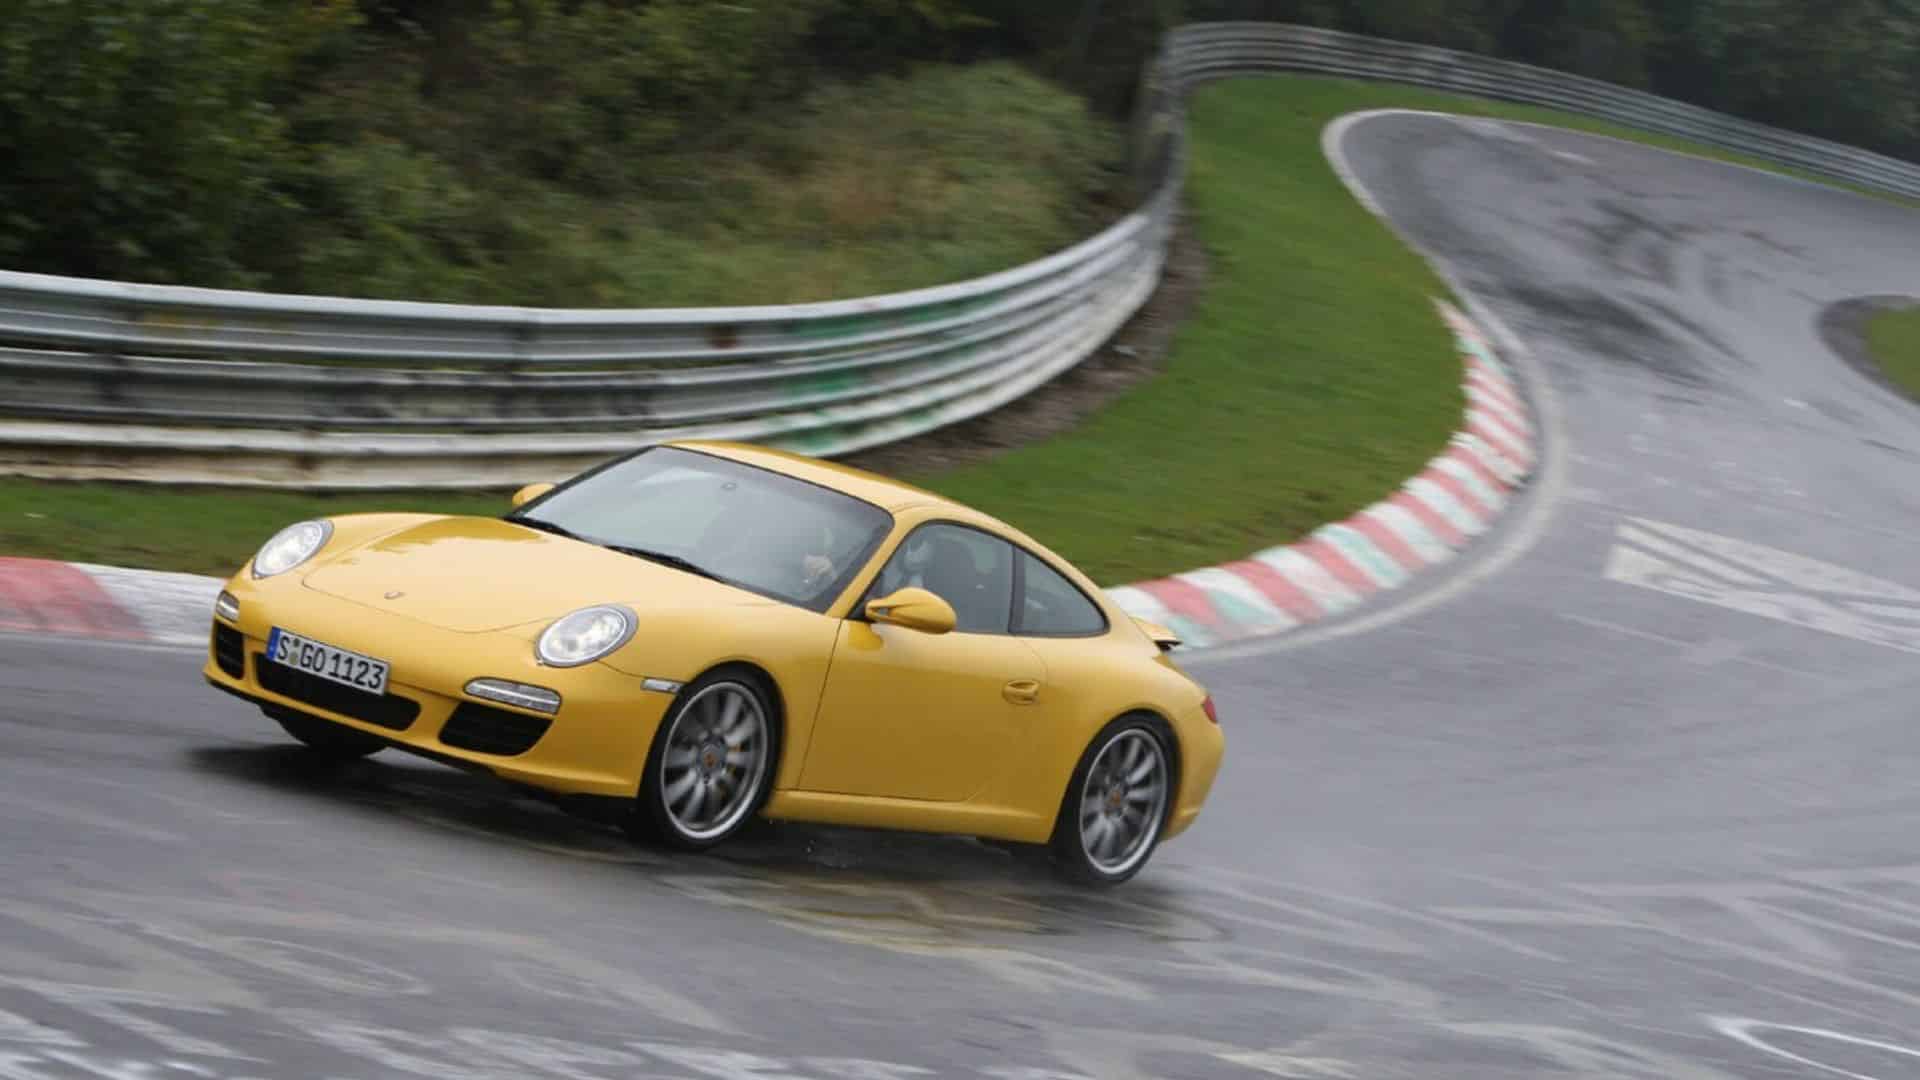 gelber Porsche 911 fährt auf einer Rennstrecke um die Kurve